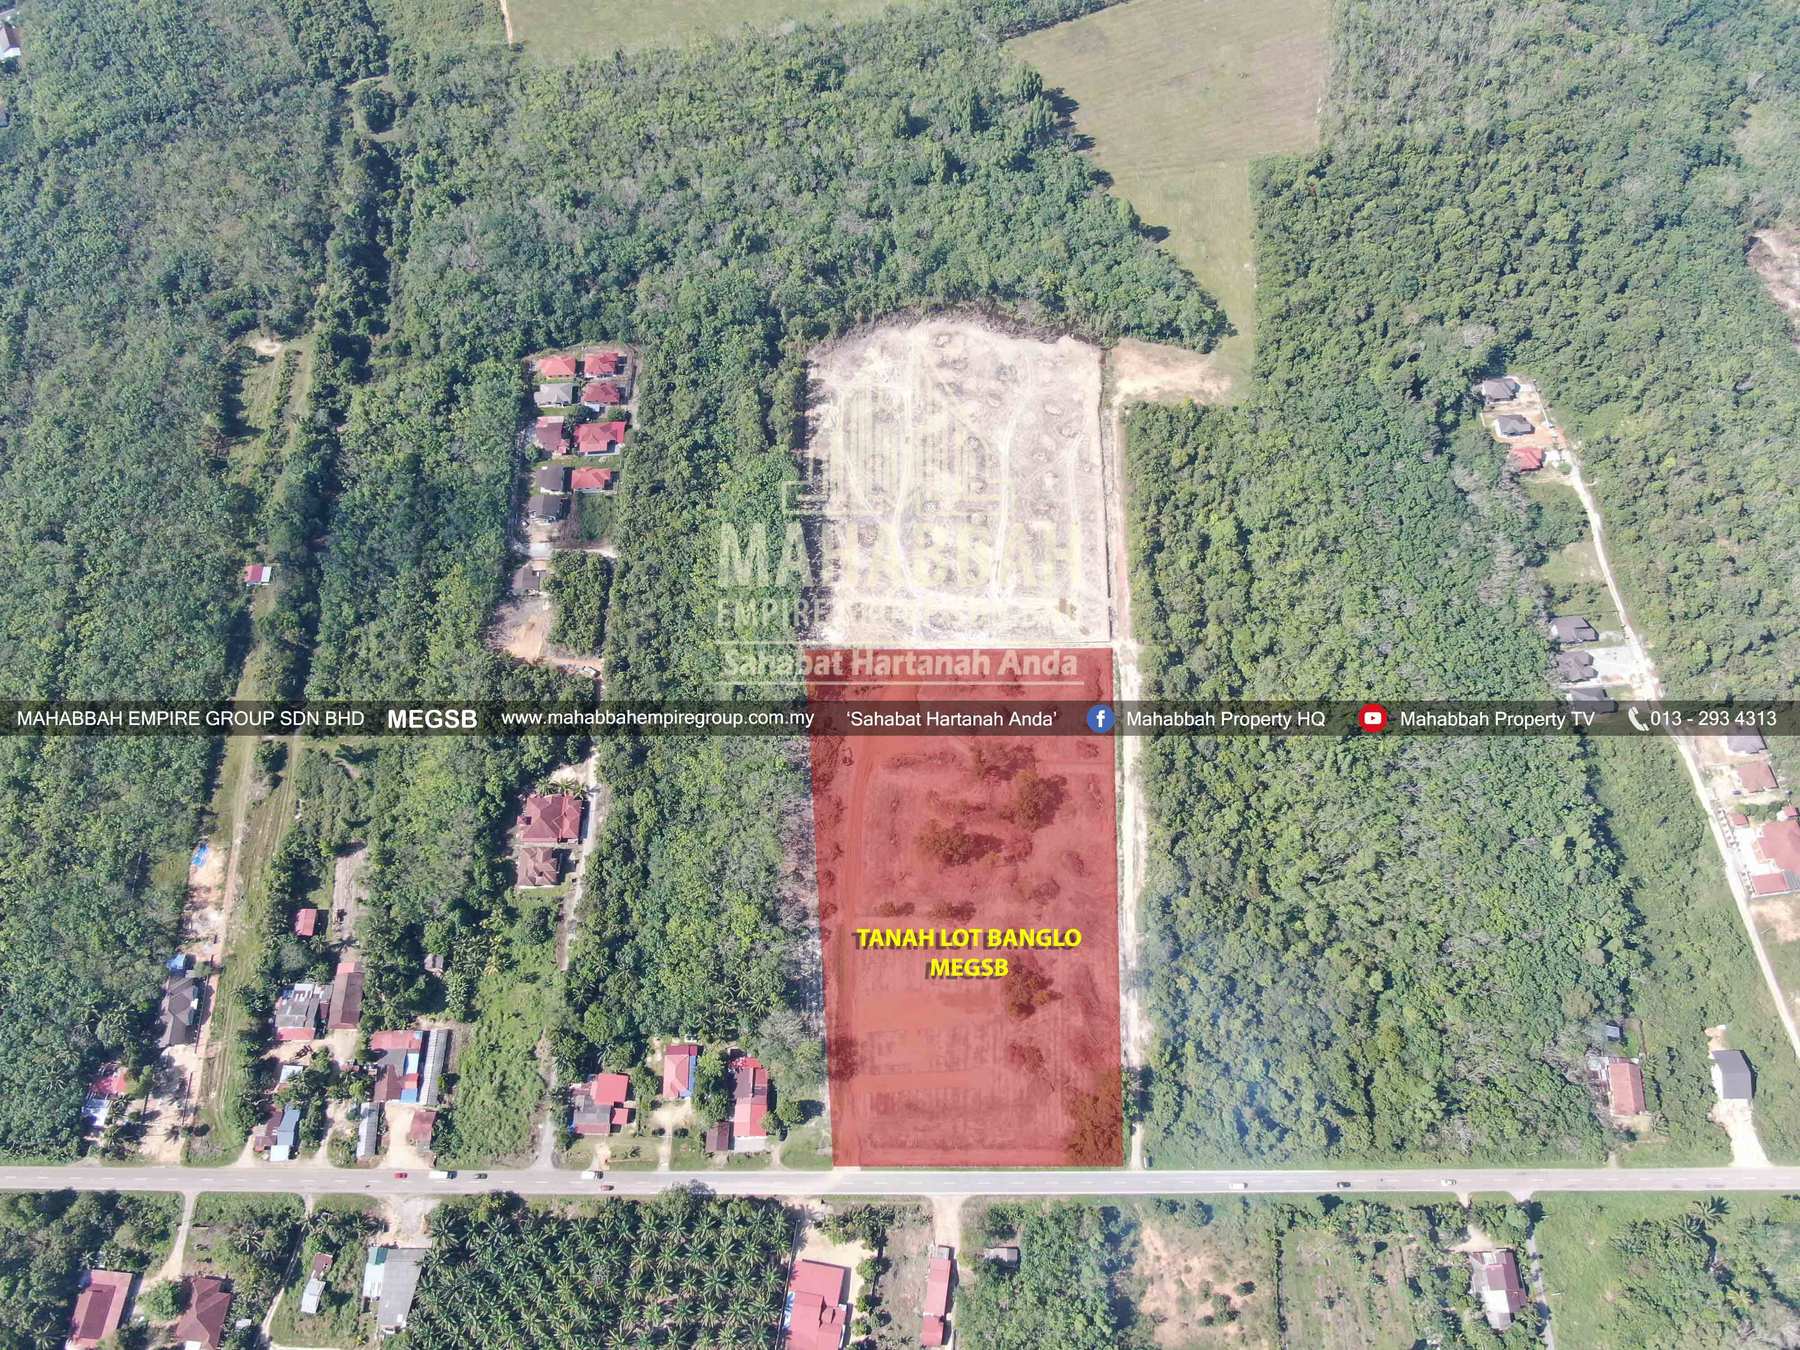 06 Tanah Lot Banglo Mampu Milik MEGSB Alor Pasir Tanah Merah (TM10)